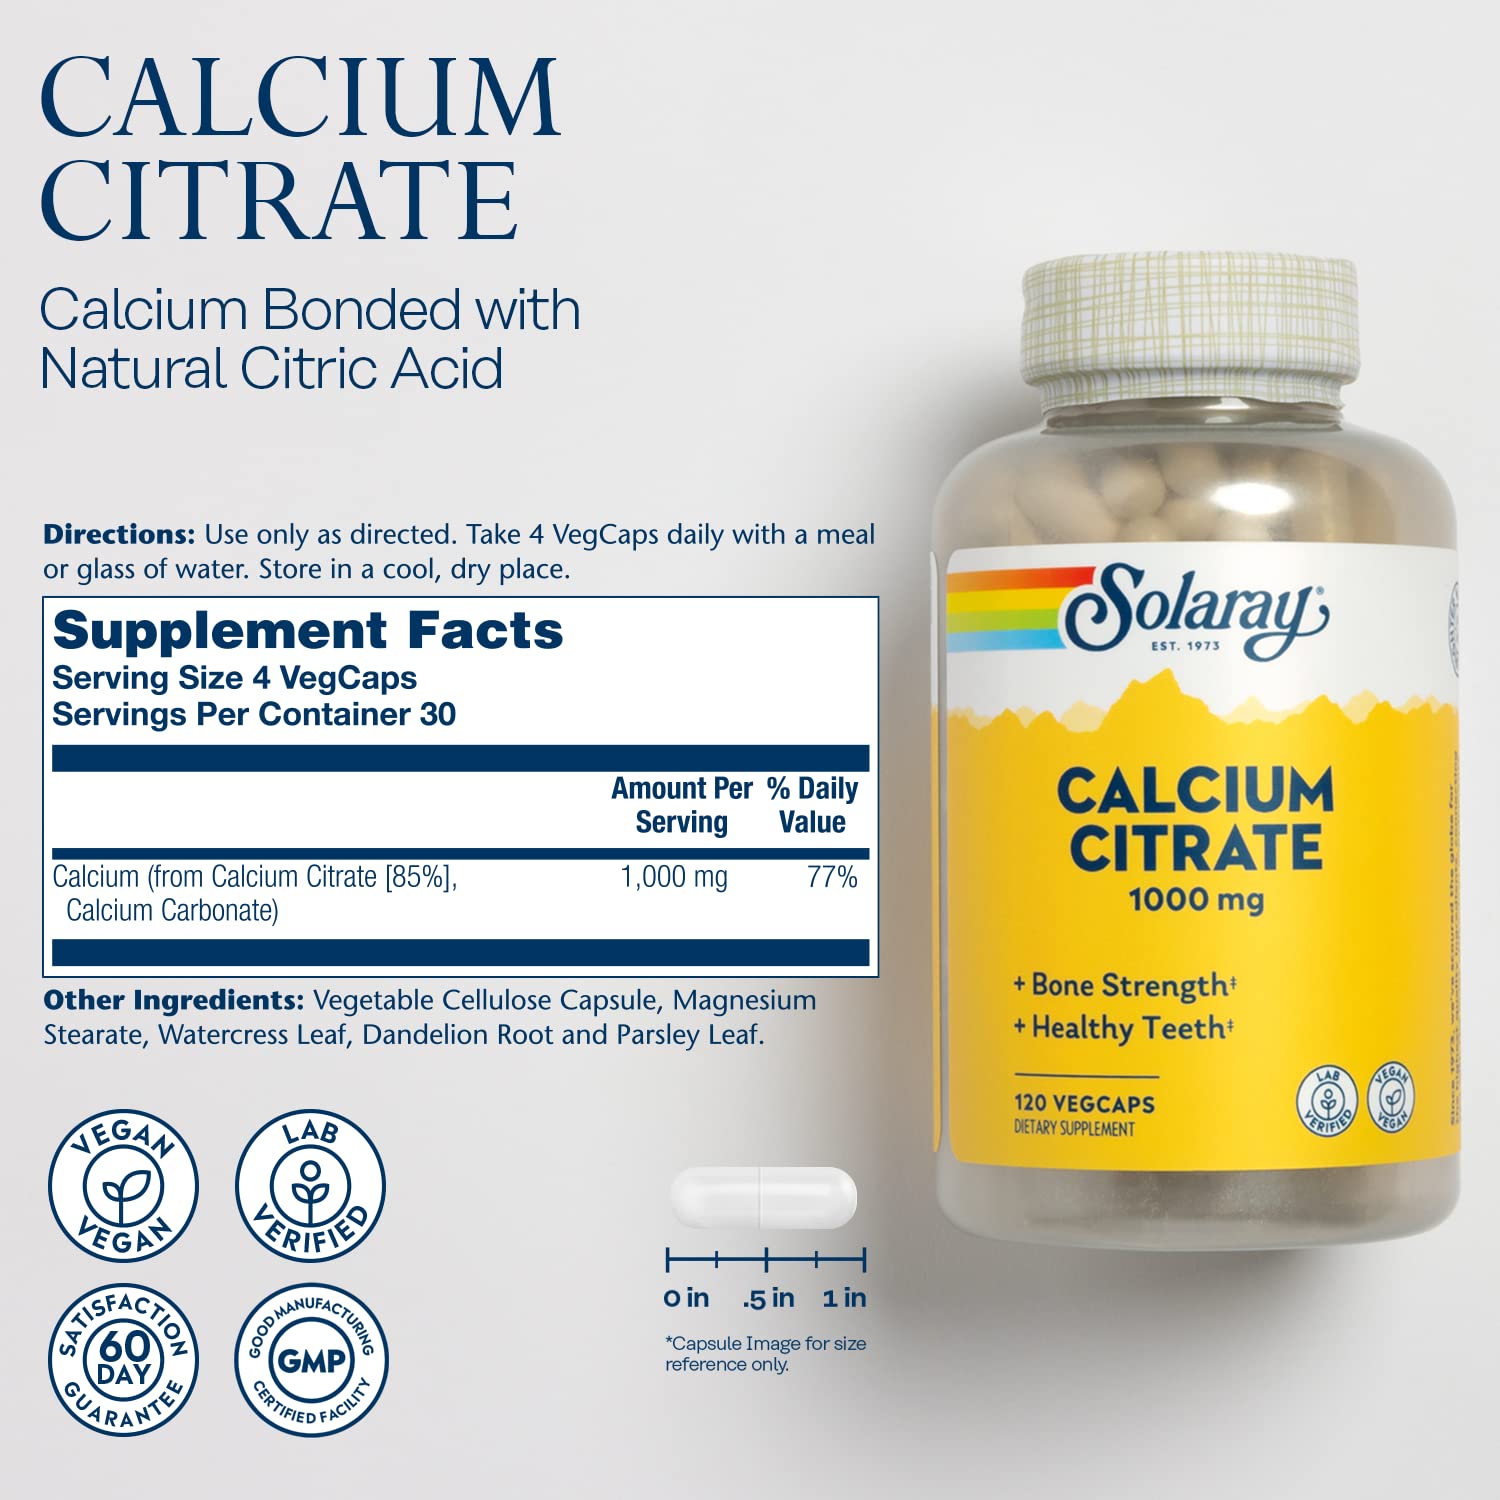 Solaray Calcium Citrate Capsules, 1000mg, 120 Count